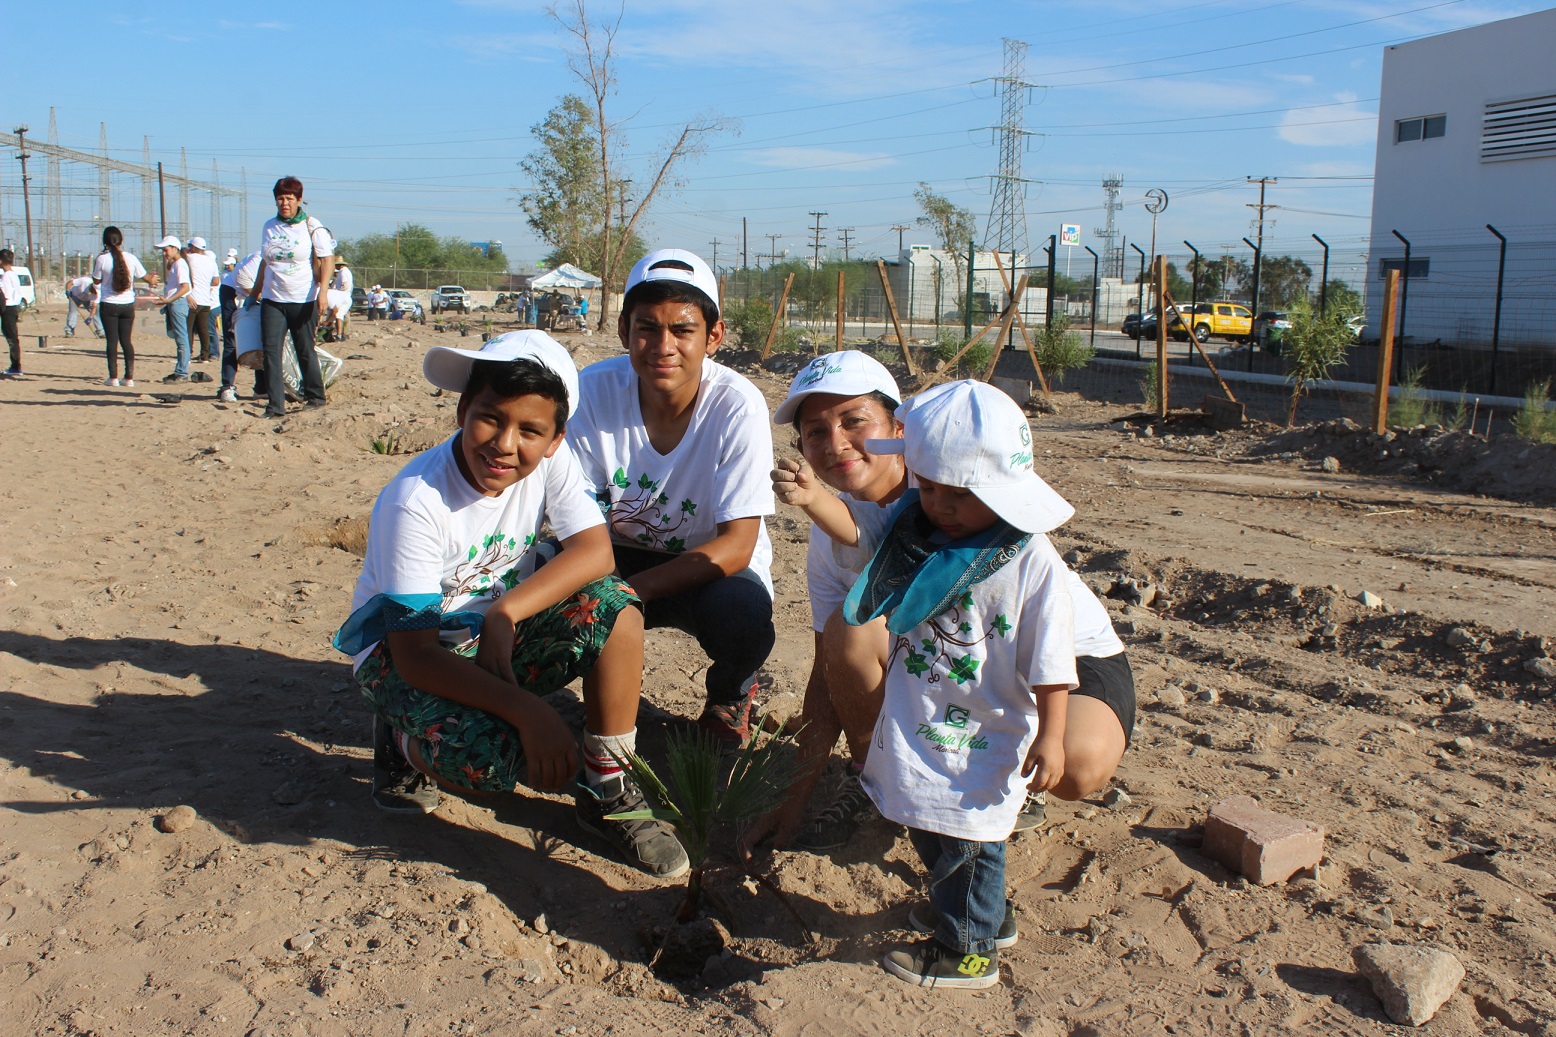 En Baja California, en coordinación con voluntarios de Grupo Gayosso, realizamos la plantación de 200 árboles de las especies álamo, sauce, palo verde, mezquite y palma abanico. Un total de 150 voluntarios realizaron labores de limpieza y plantaron árboles.